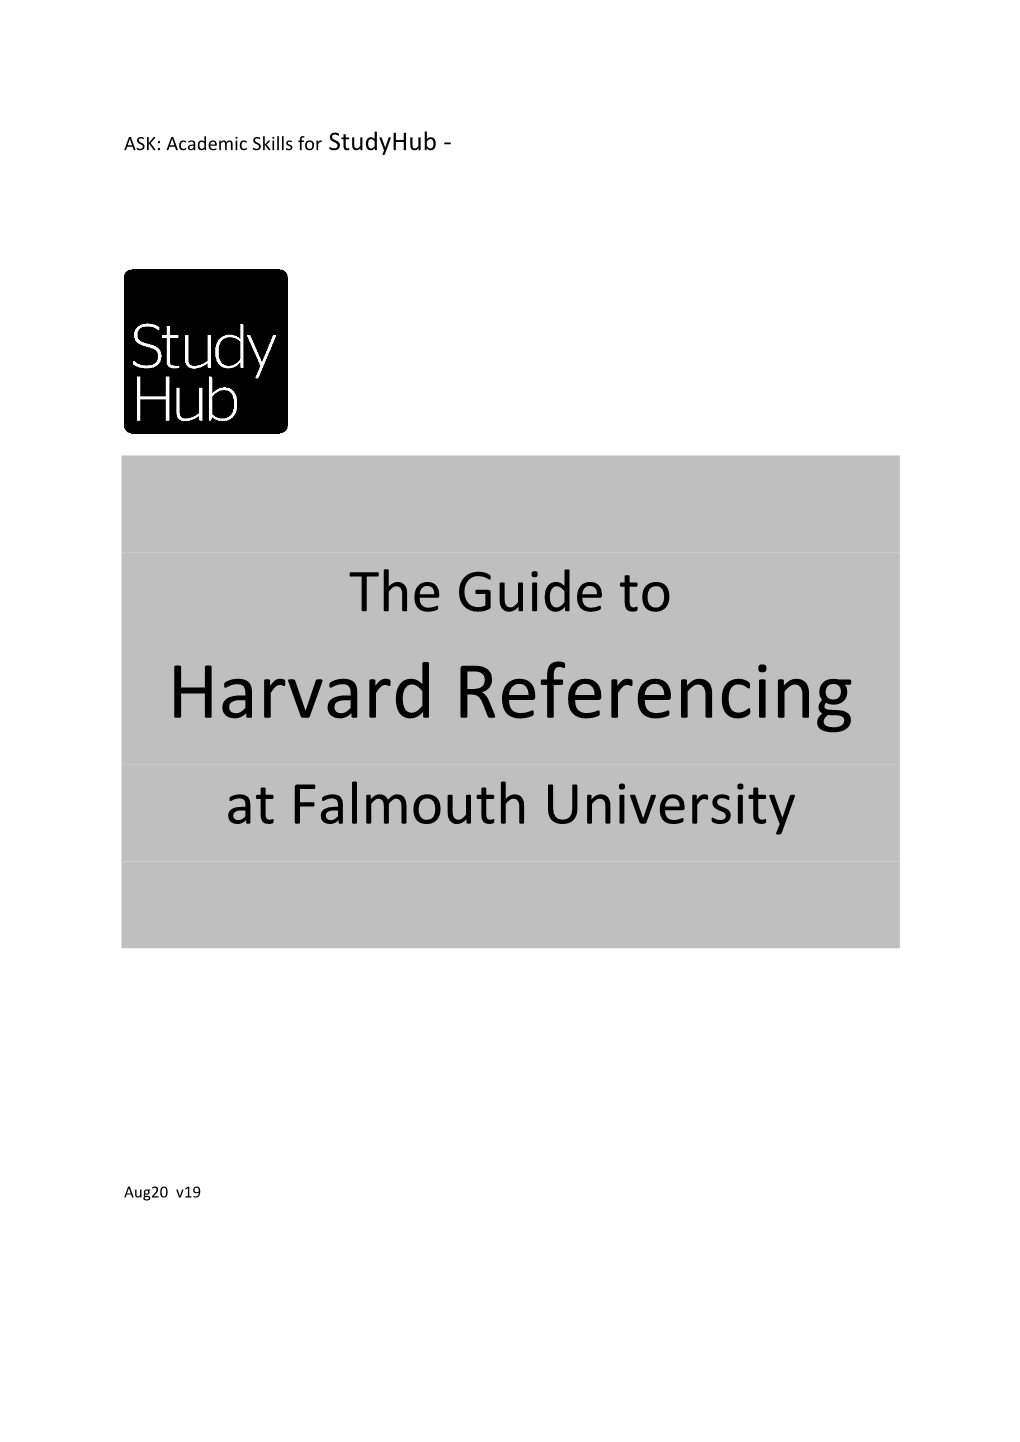 Harvard Referencing at Falmouth University